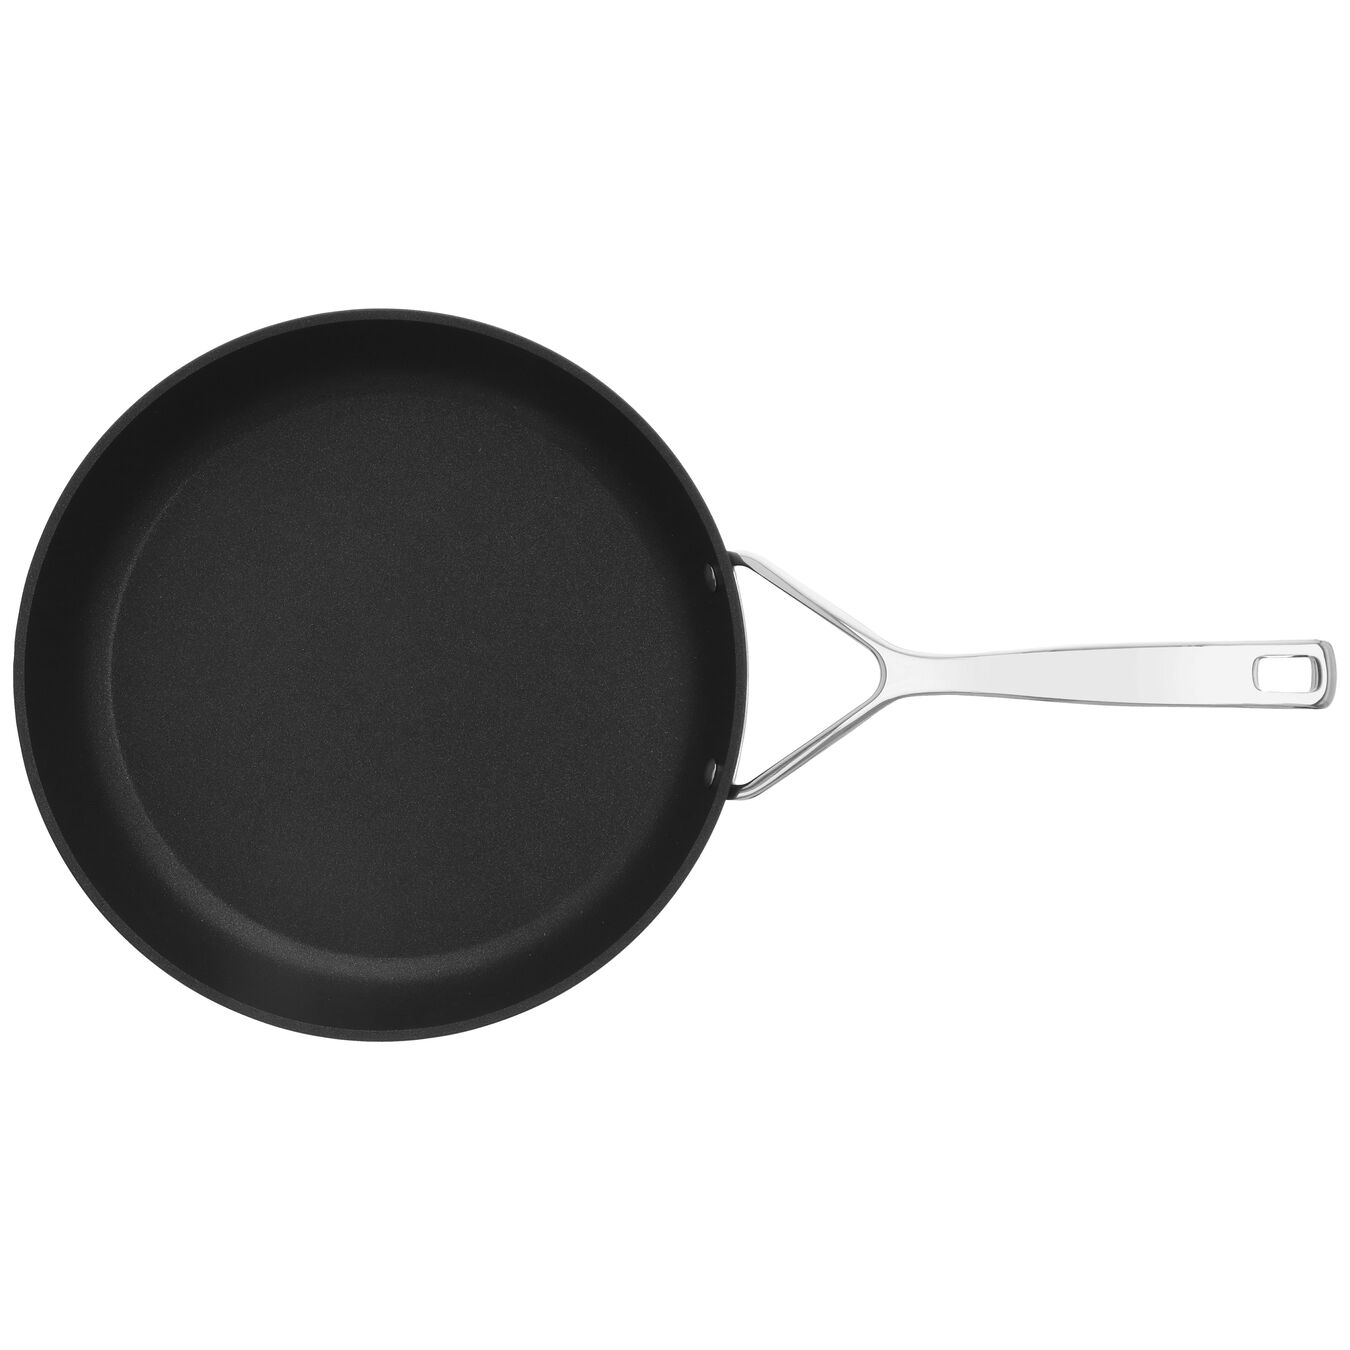 28 cm / 11 inch aluminium Frying pan,,large 4